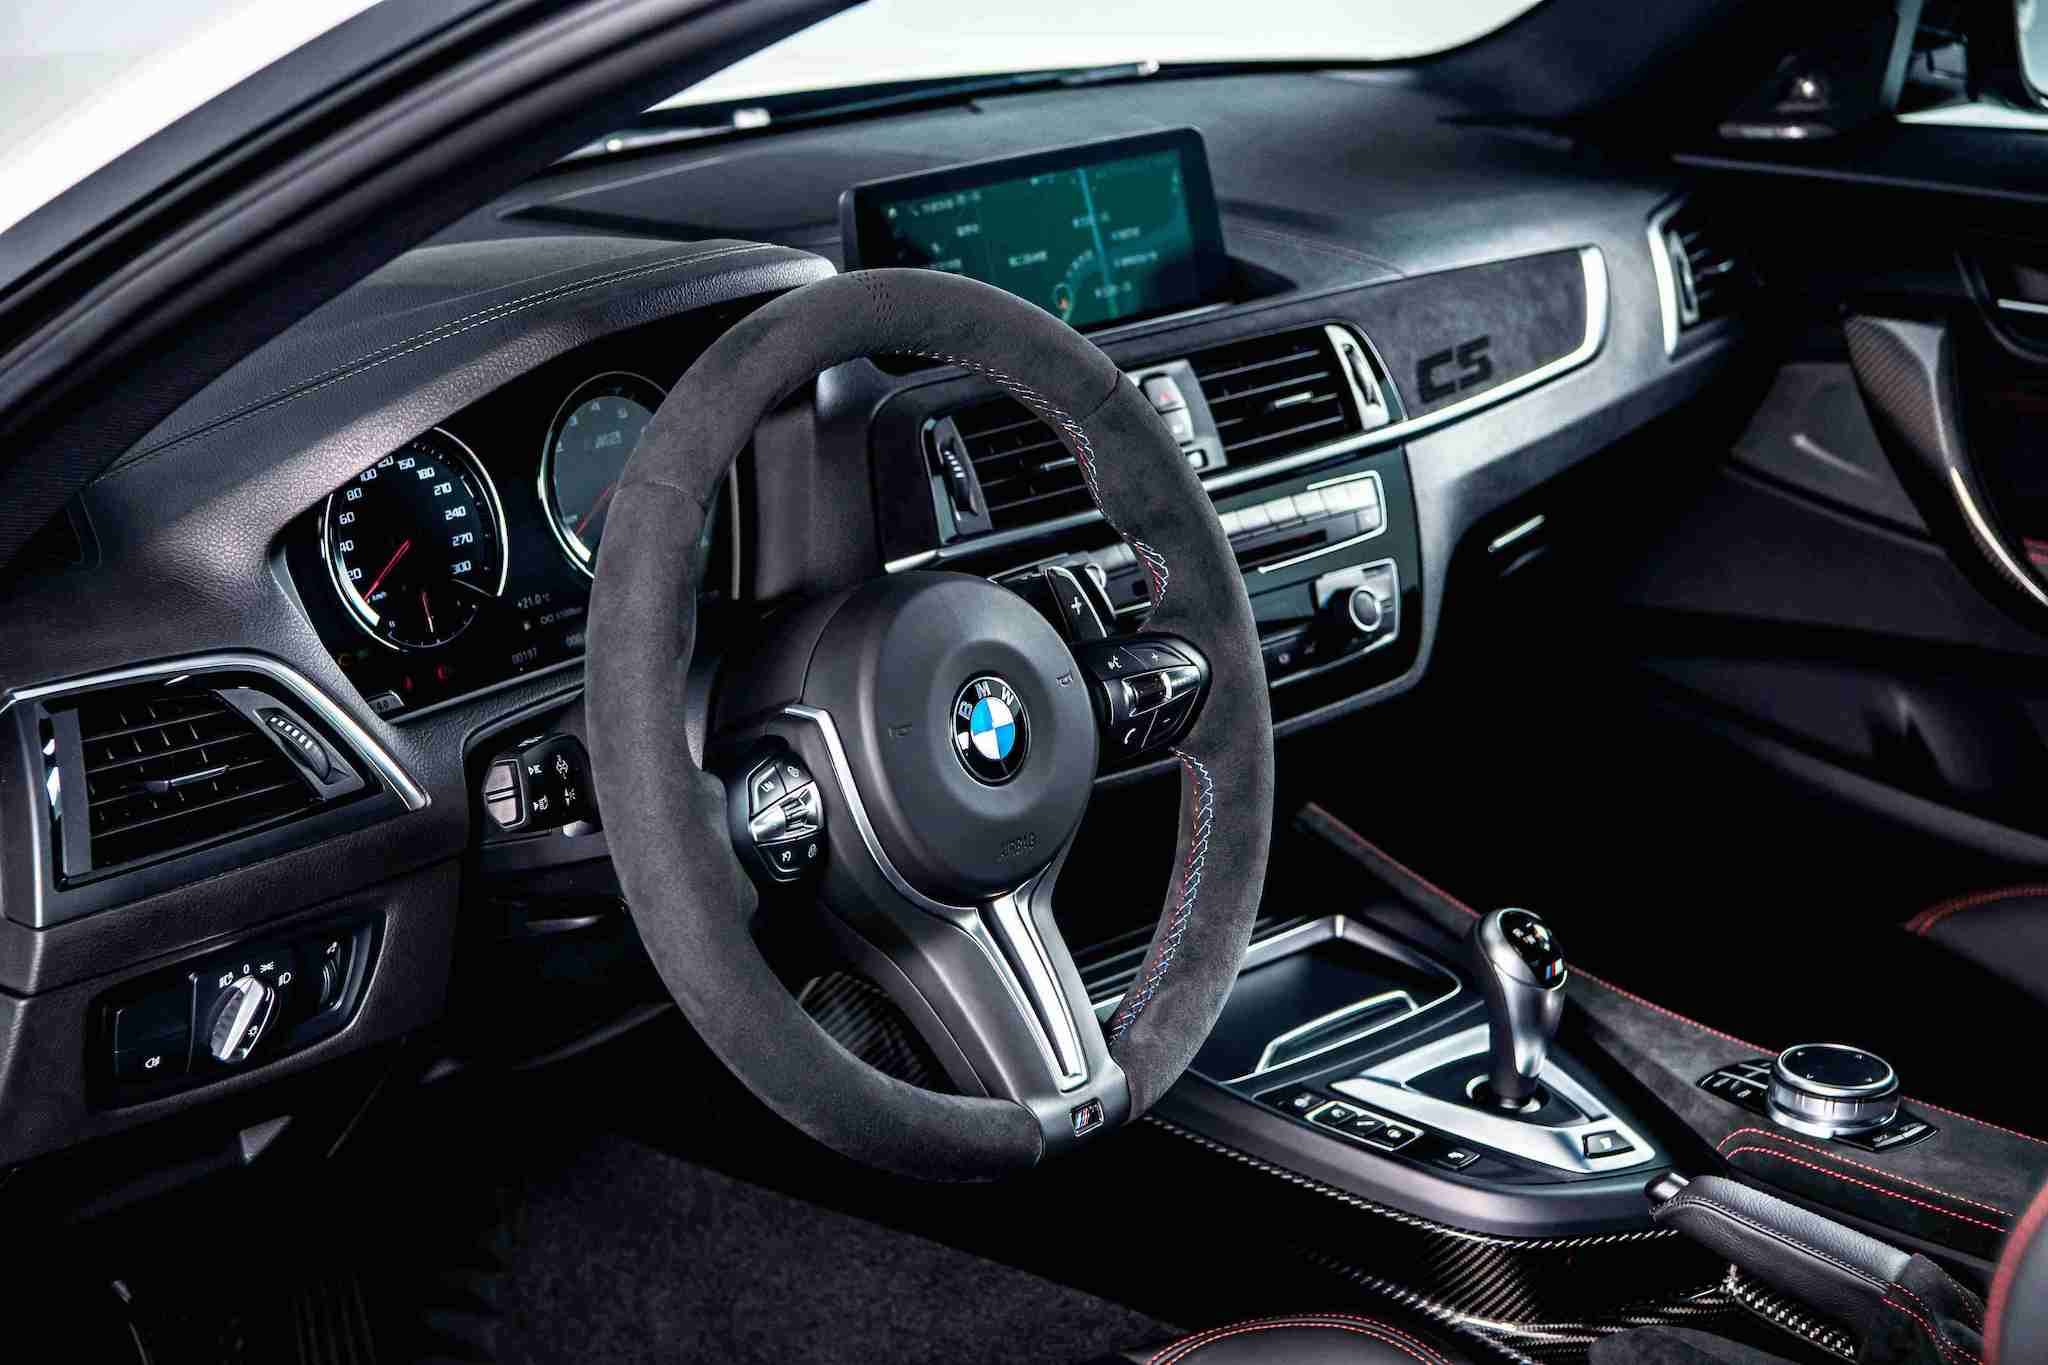 全新 BMW M2 CS 處處可見 Alcantara 麂皮材質與對比紅色縫線設計，副駕駛座前方更鑲上專屬的紅色「CS」字樣。